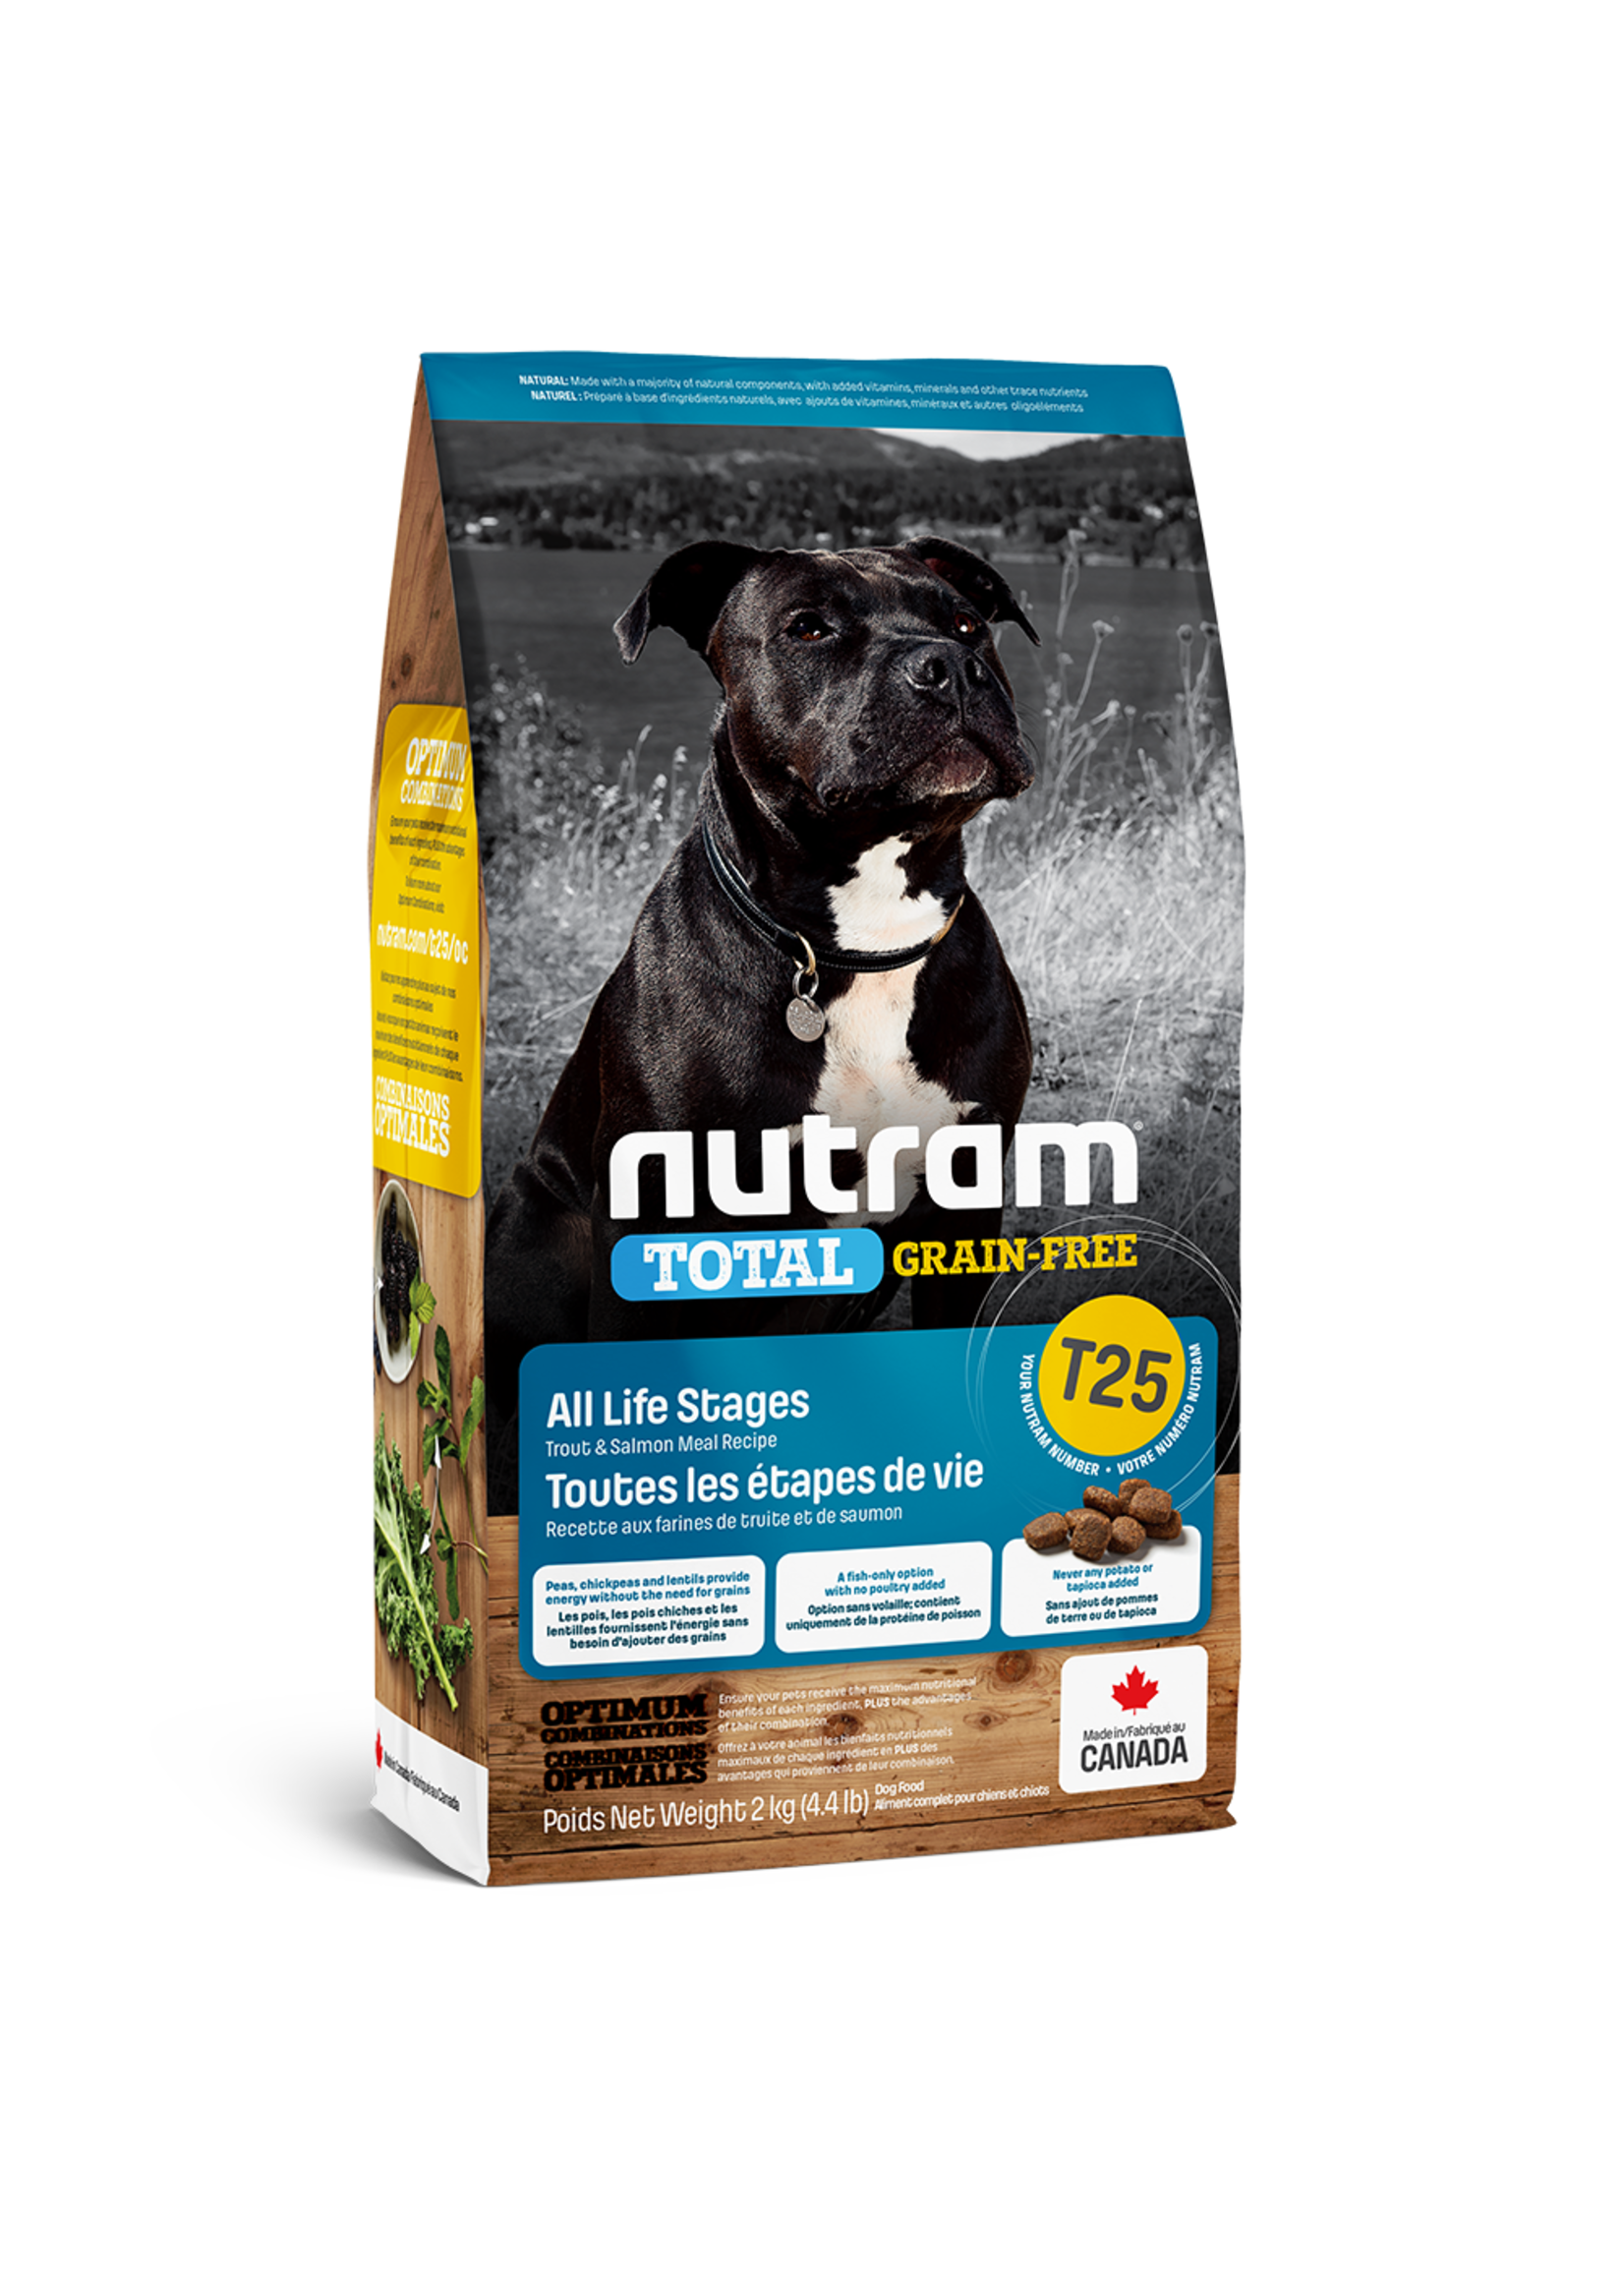 Nutram Nutram 3.0 Total Grain Free Dog T25 Trout & Salmon